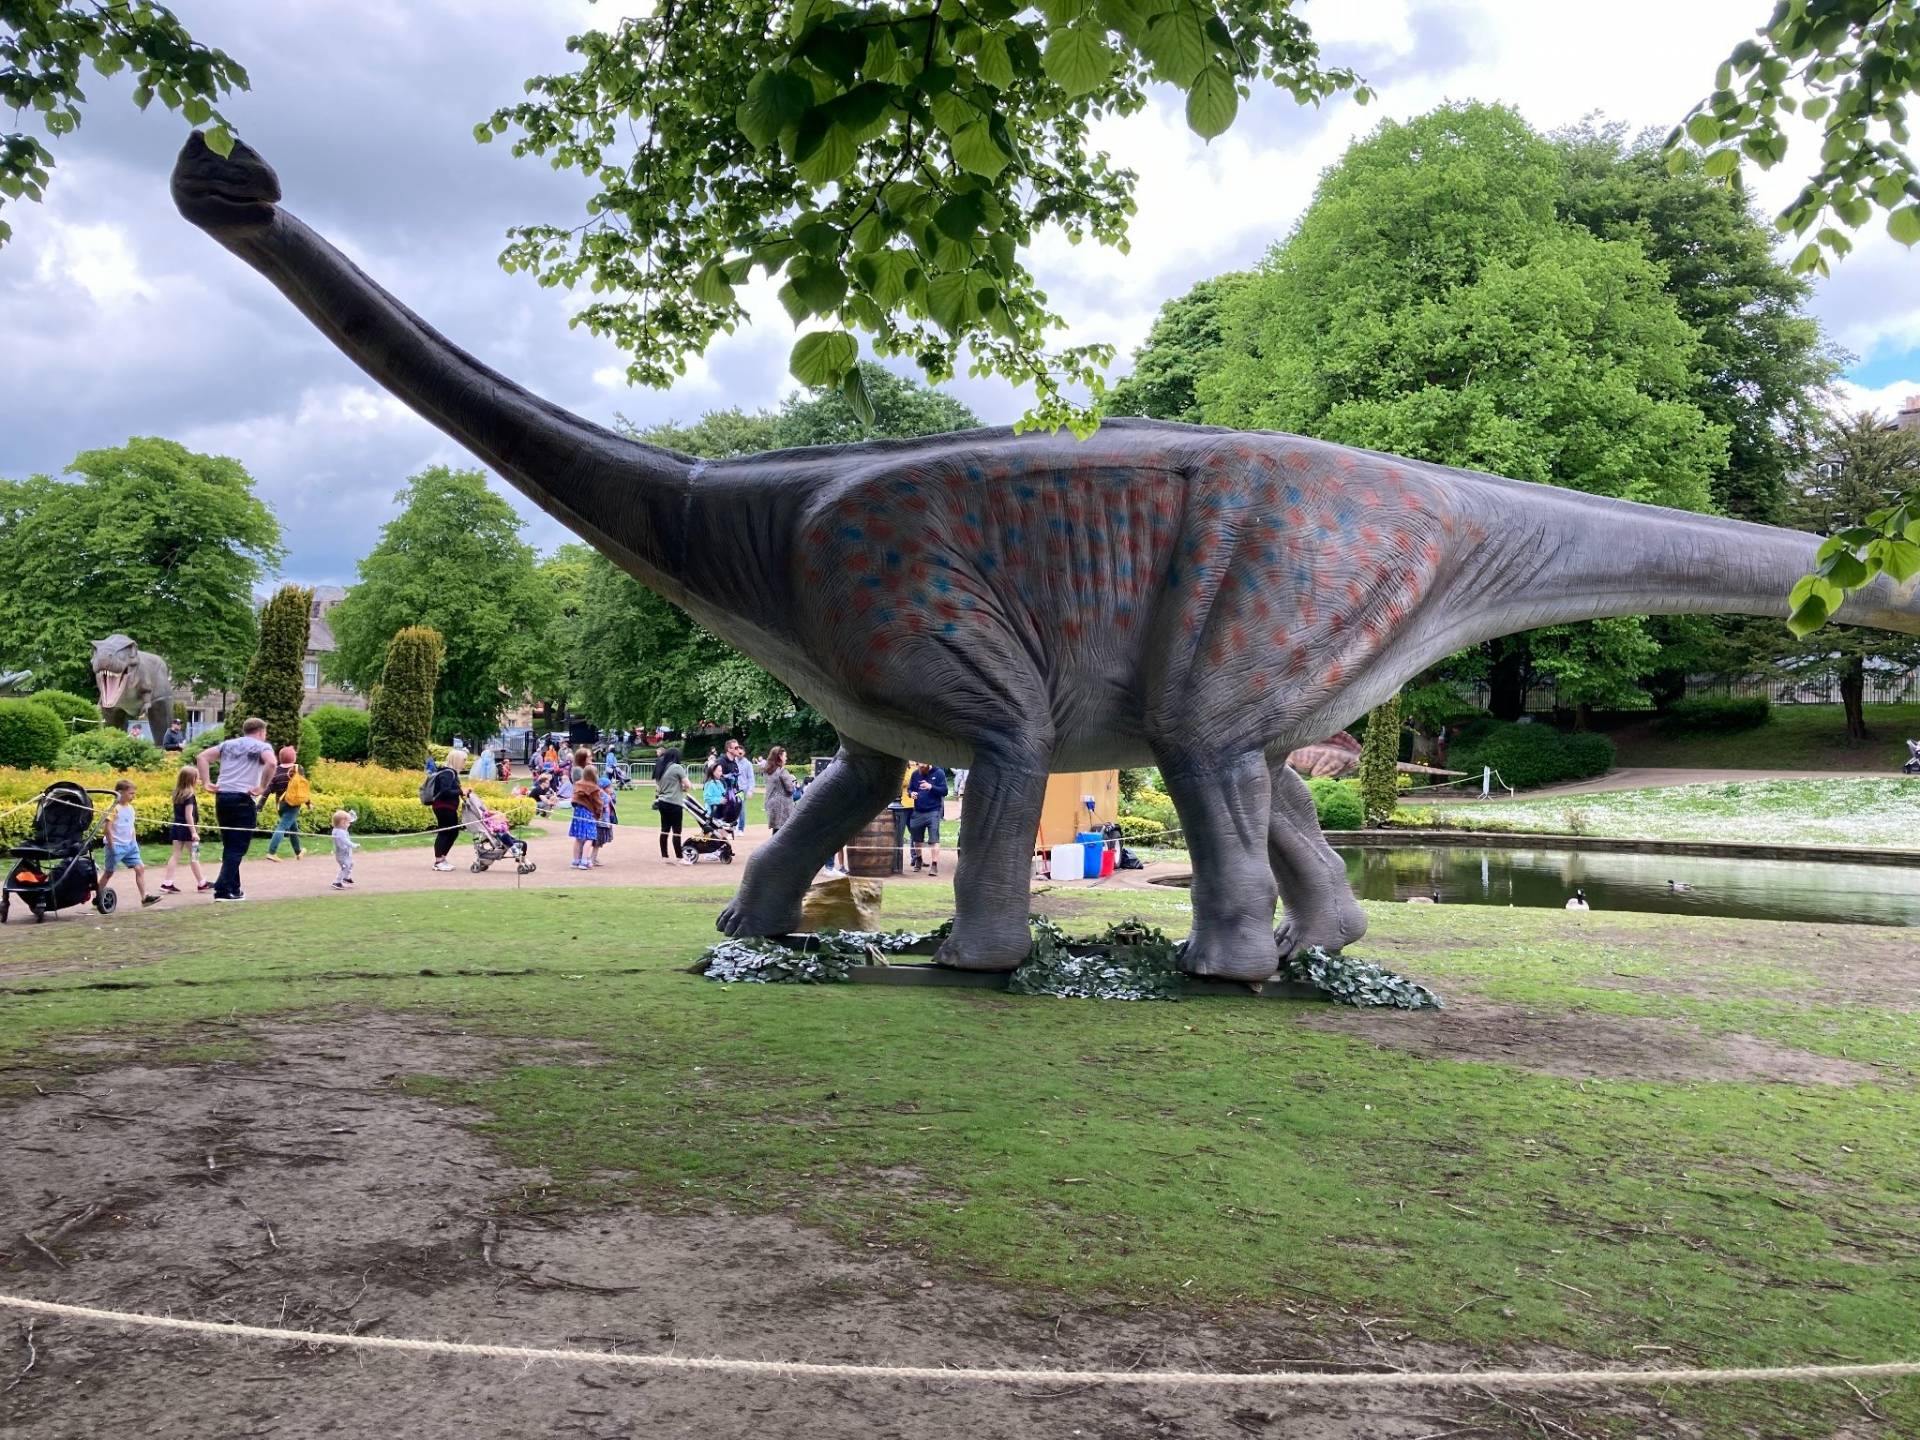 Les dinosaures envahiront le RécréoParc